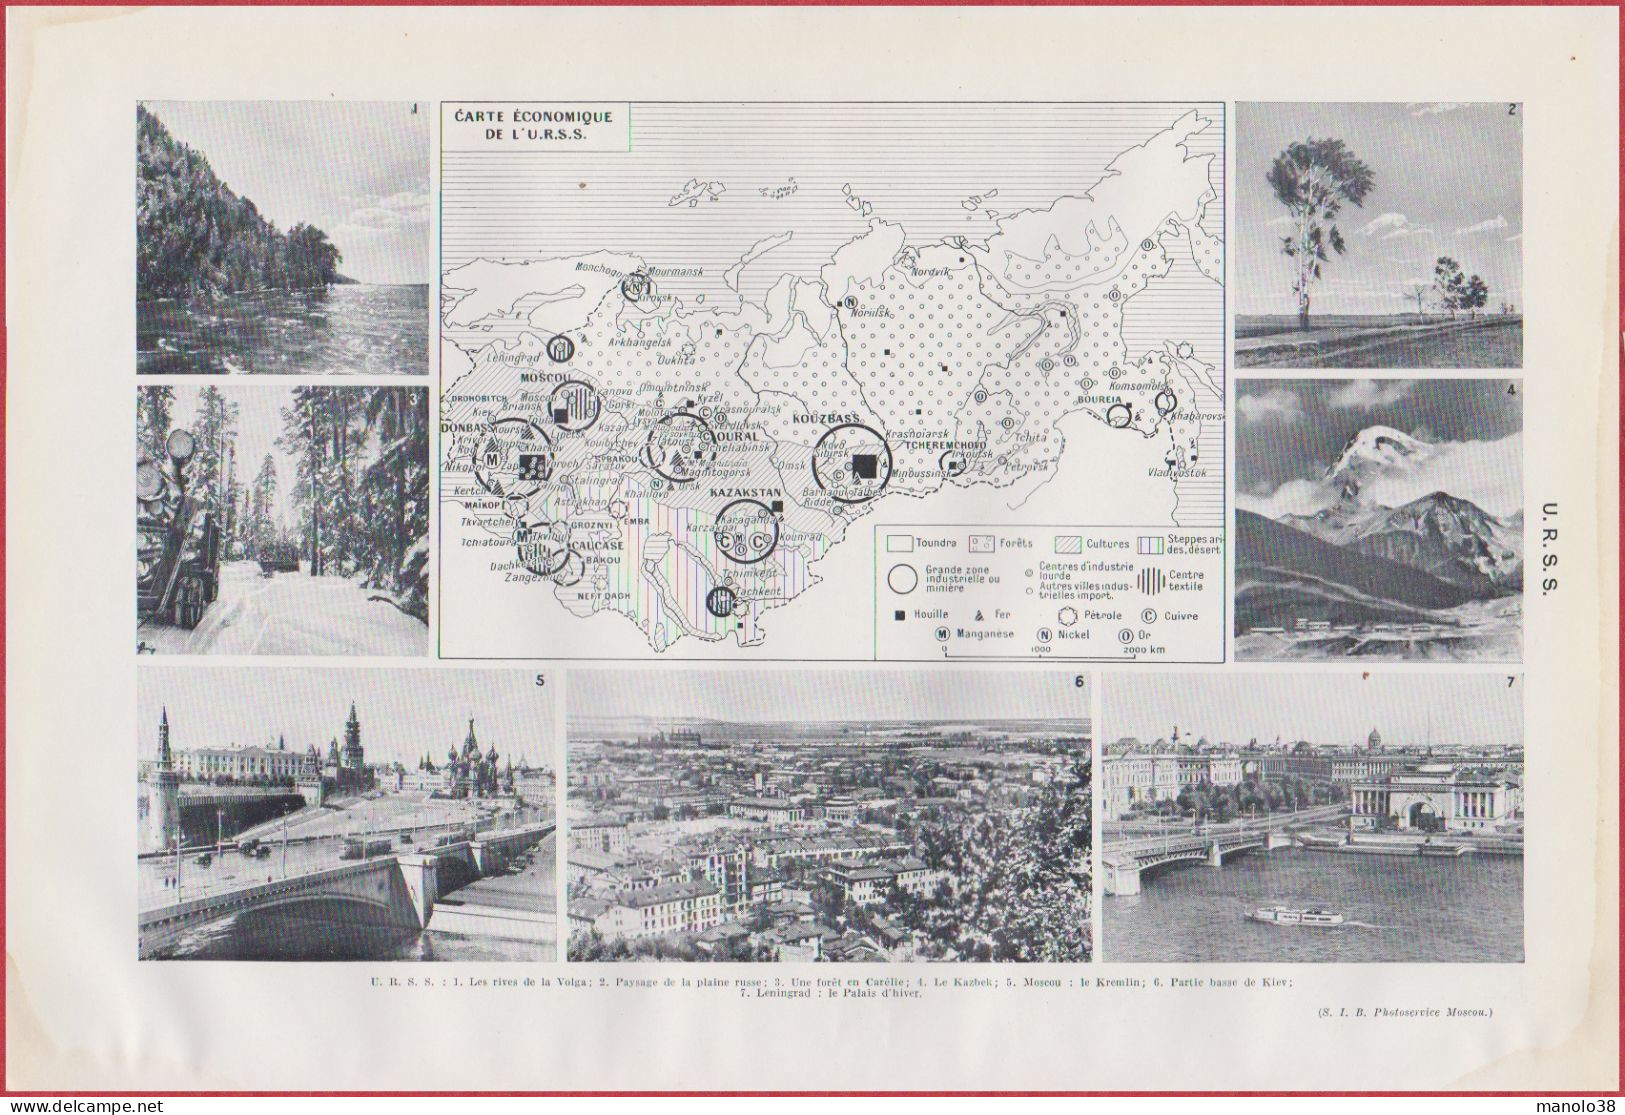 Carte De L'URSS. Russie. Ukraine. Développement Territorial. Carte économique. Divers Vues. Larousse 1948. - Documents Historiques